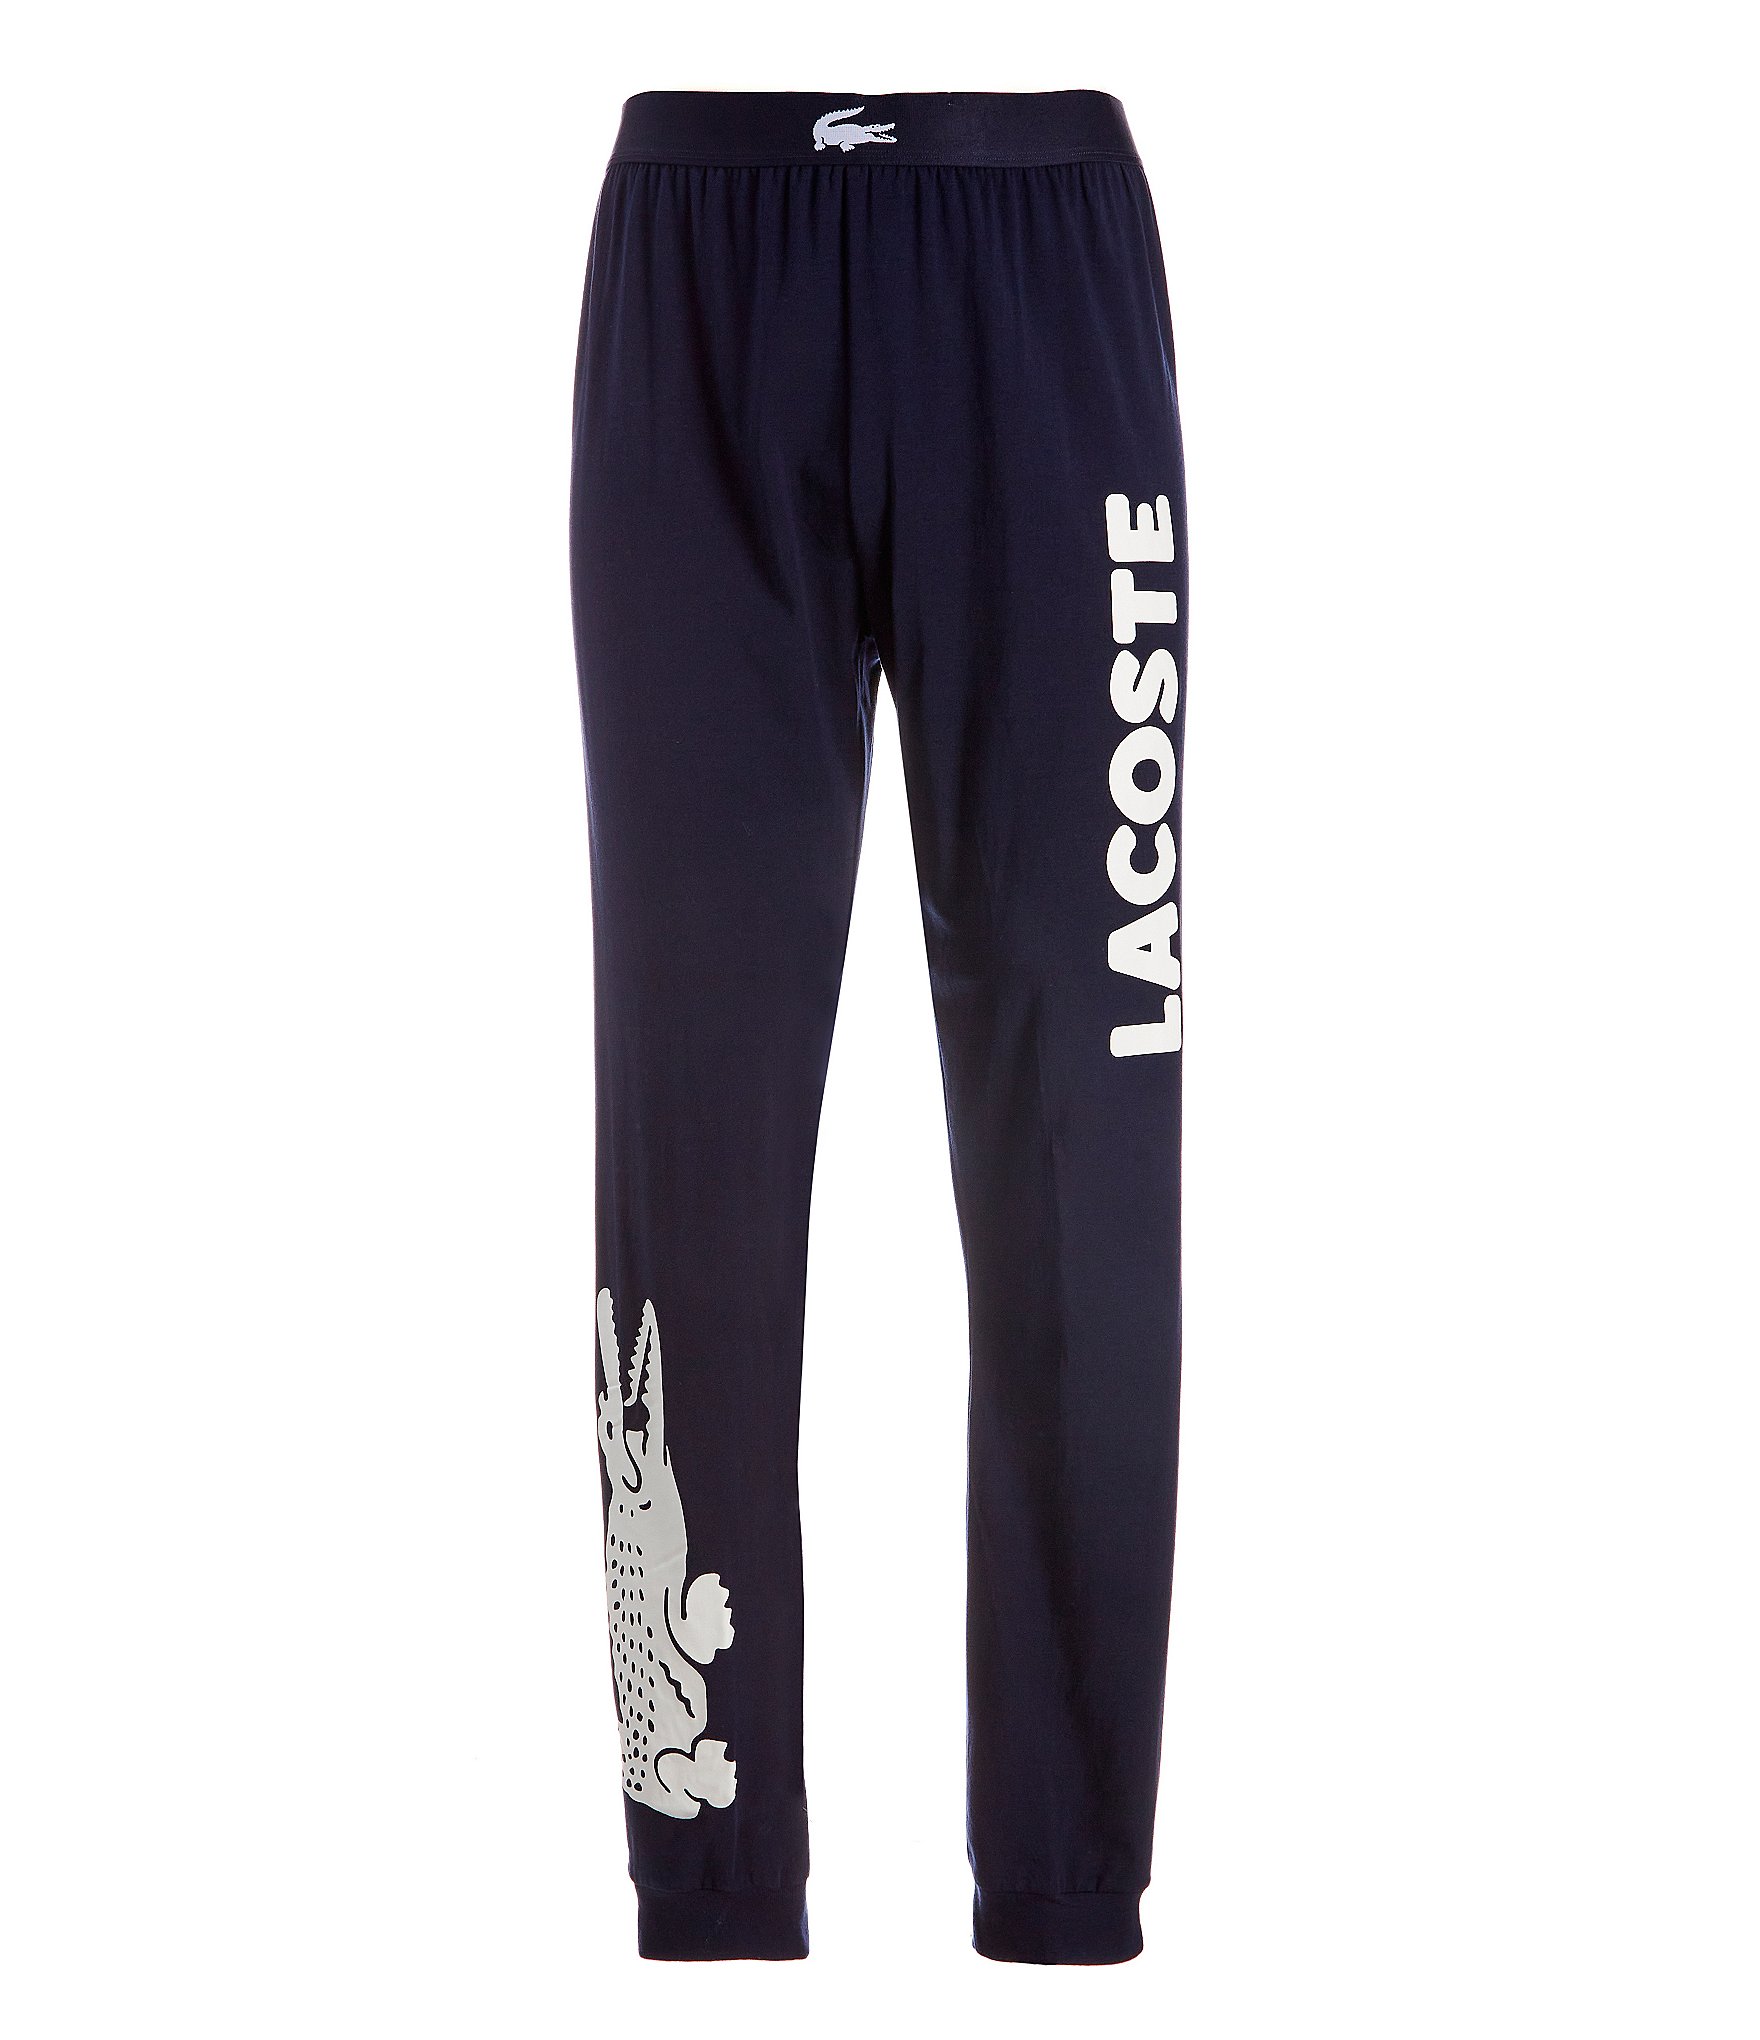 Lacoste Men's Cotton Fleece Lounge Jogger Pants - Macy's